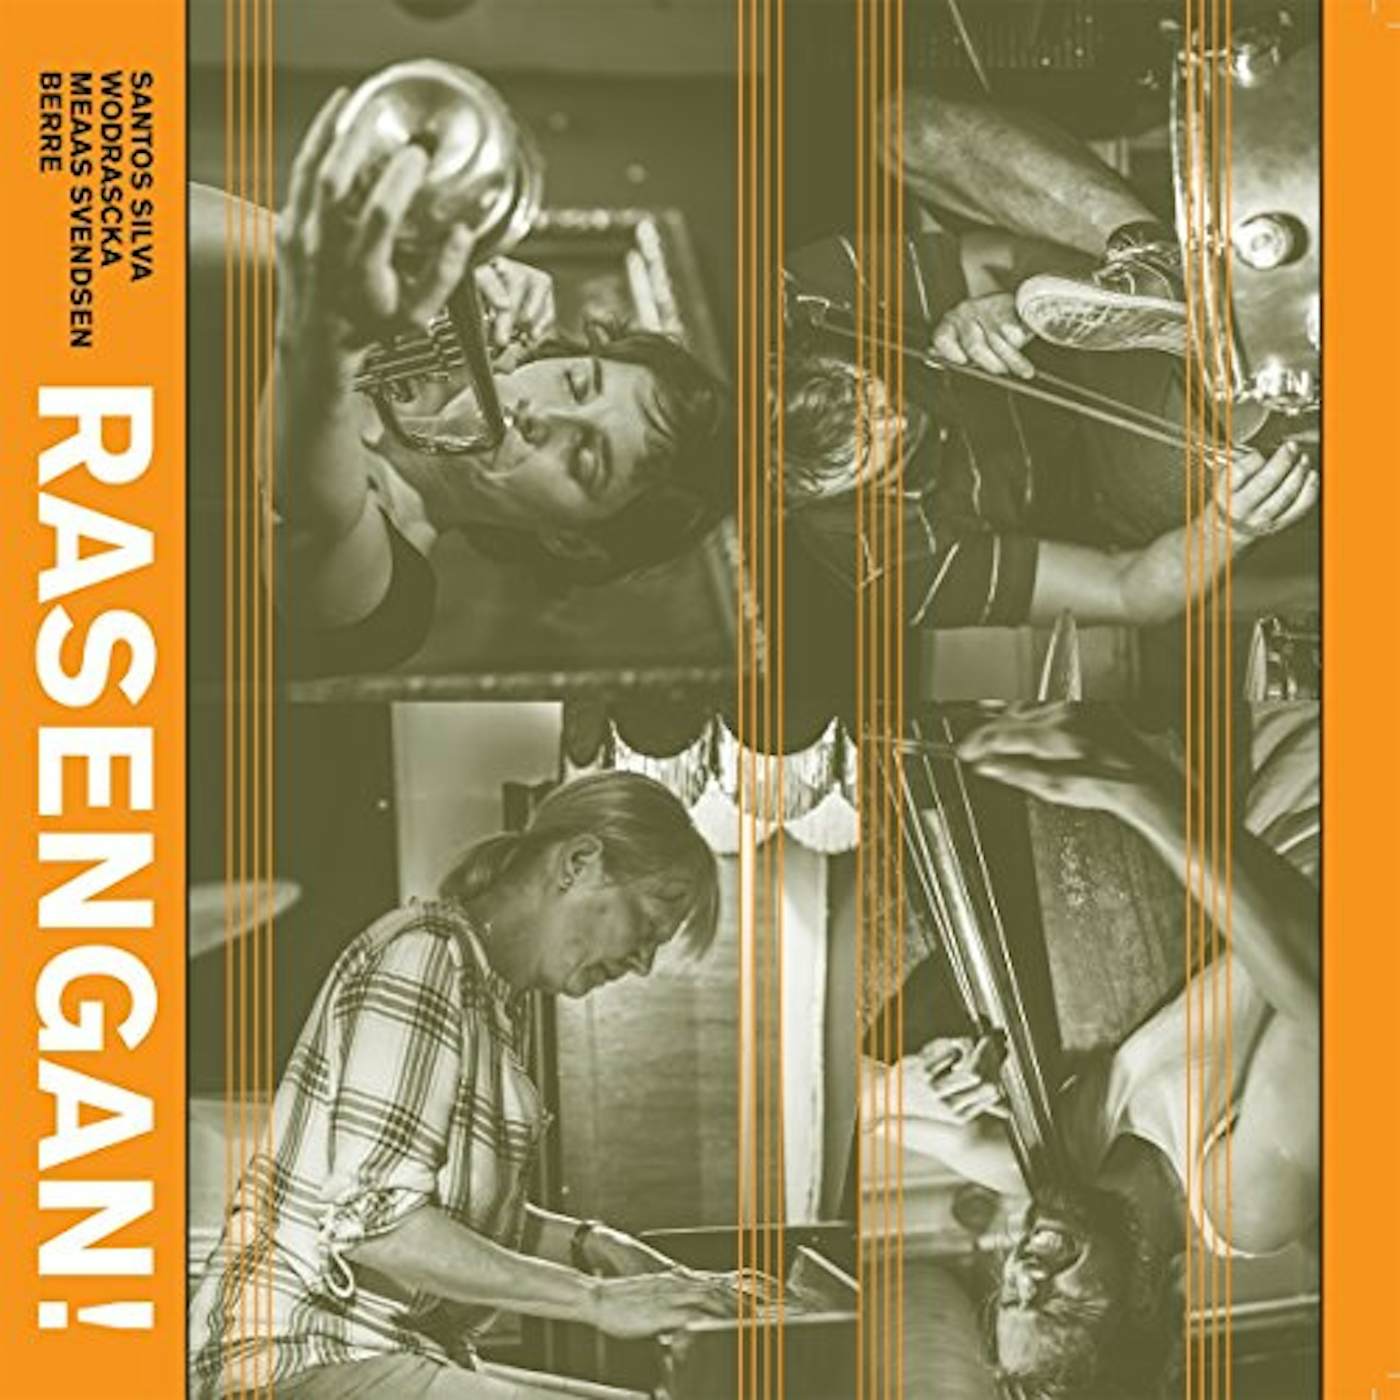 Santos Silva / Rasengan RASENGAN CD